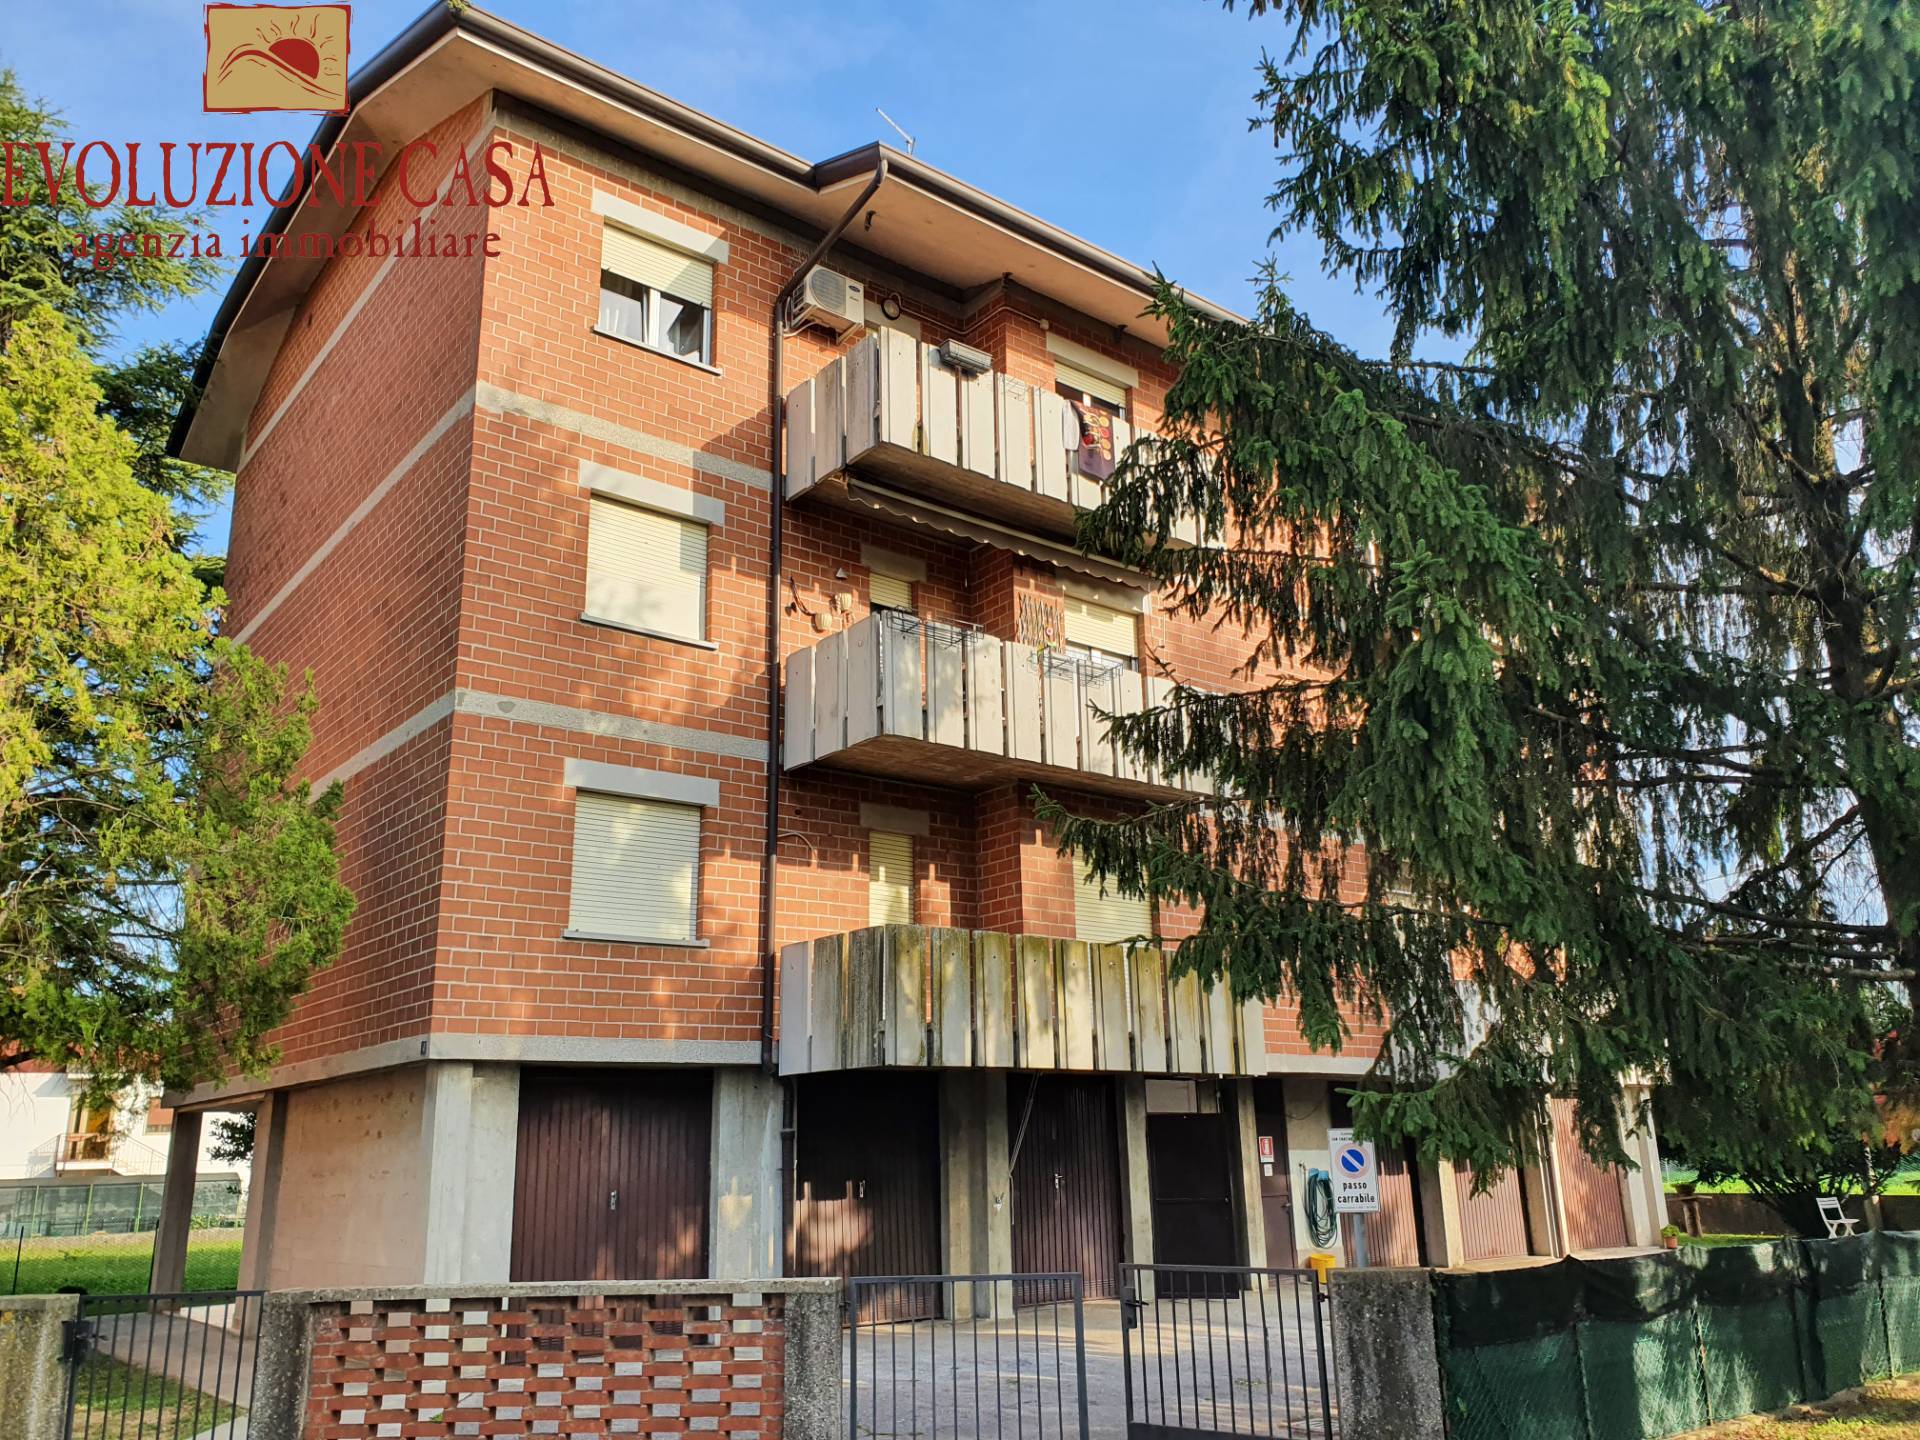 Appartamento in vendita a San Canzian d'Isonzo, 5 locali, zona iano, prezzo € 115.000 | PortaleAgenzieImmobiliari.it